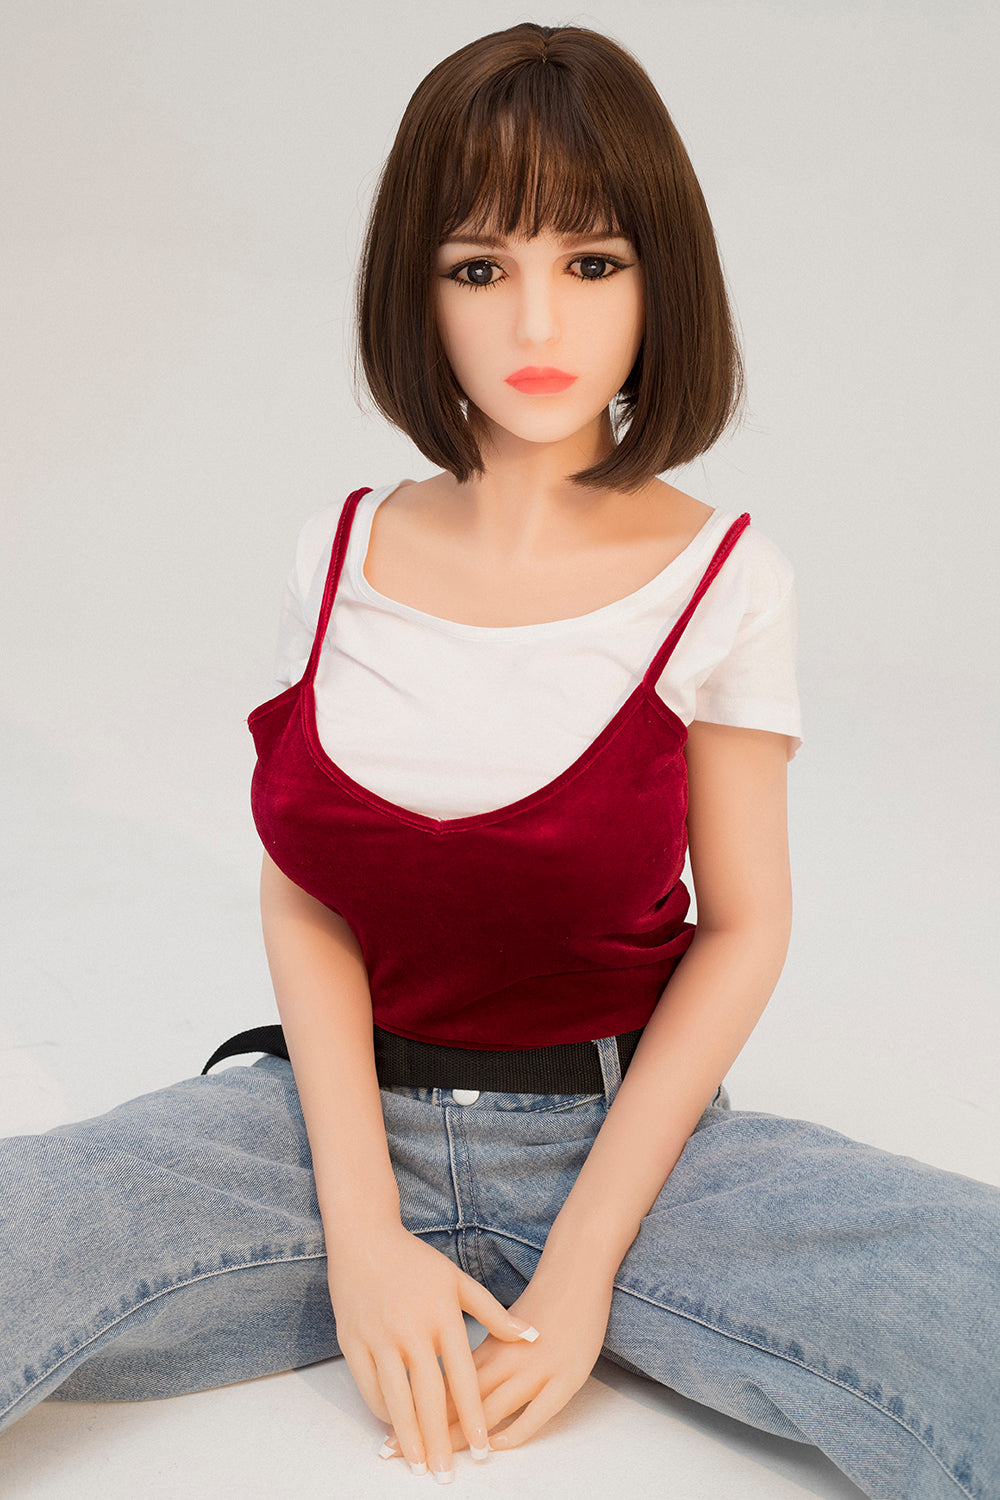 Kingmansion Elaine 140cm 4.59ft Big Boobs Anime Sex Love Doll for Men